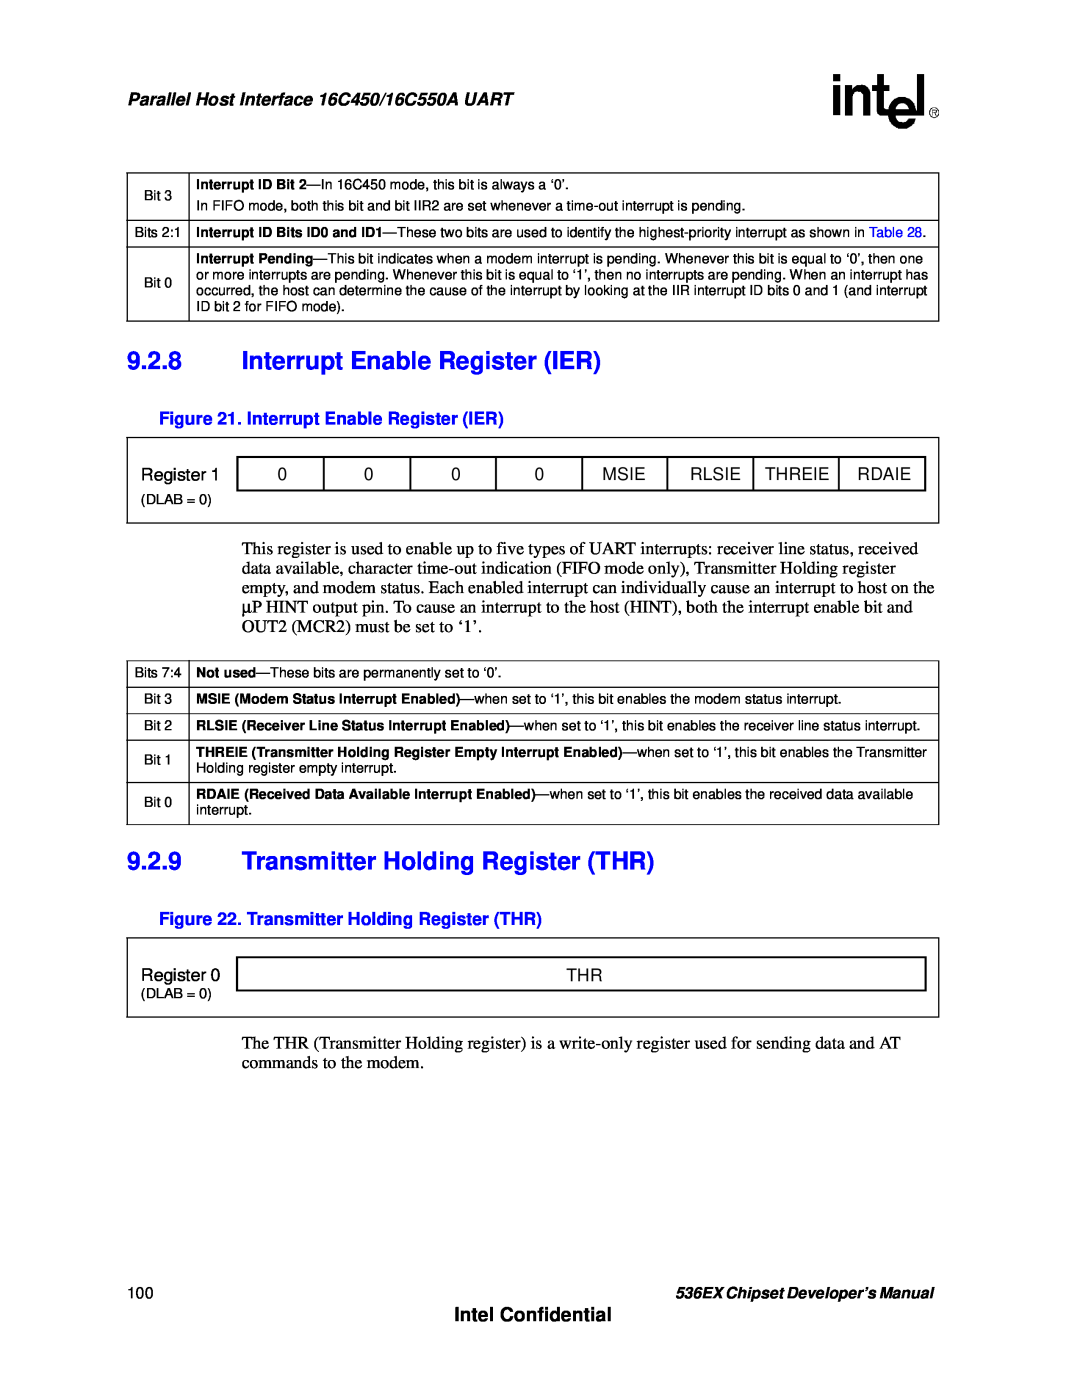 Intel 537EX manual 9.2.8Interrupt Enable Register IER, 9.2.9Transmitter Holding Register THR, Intel Confidential 